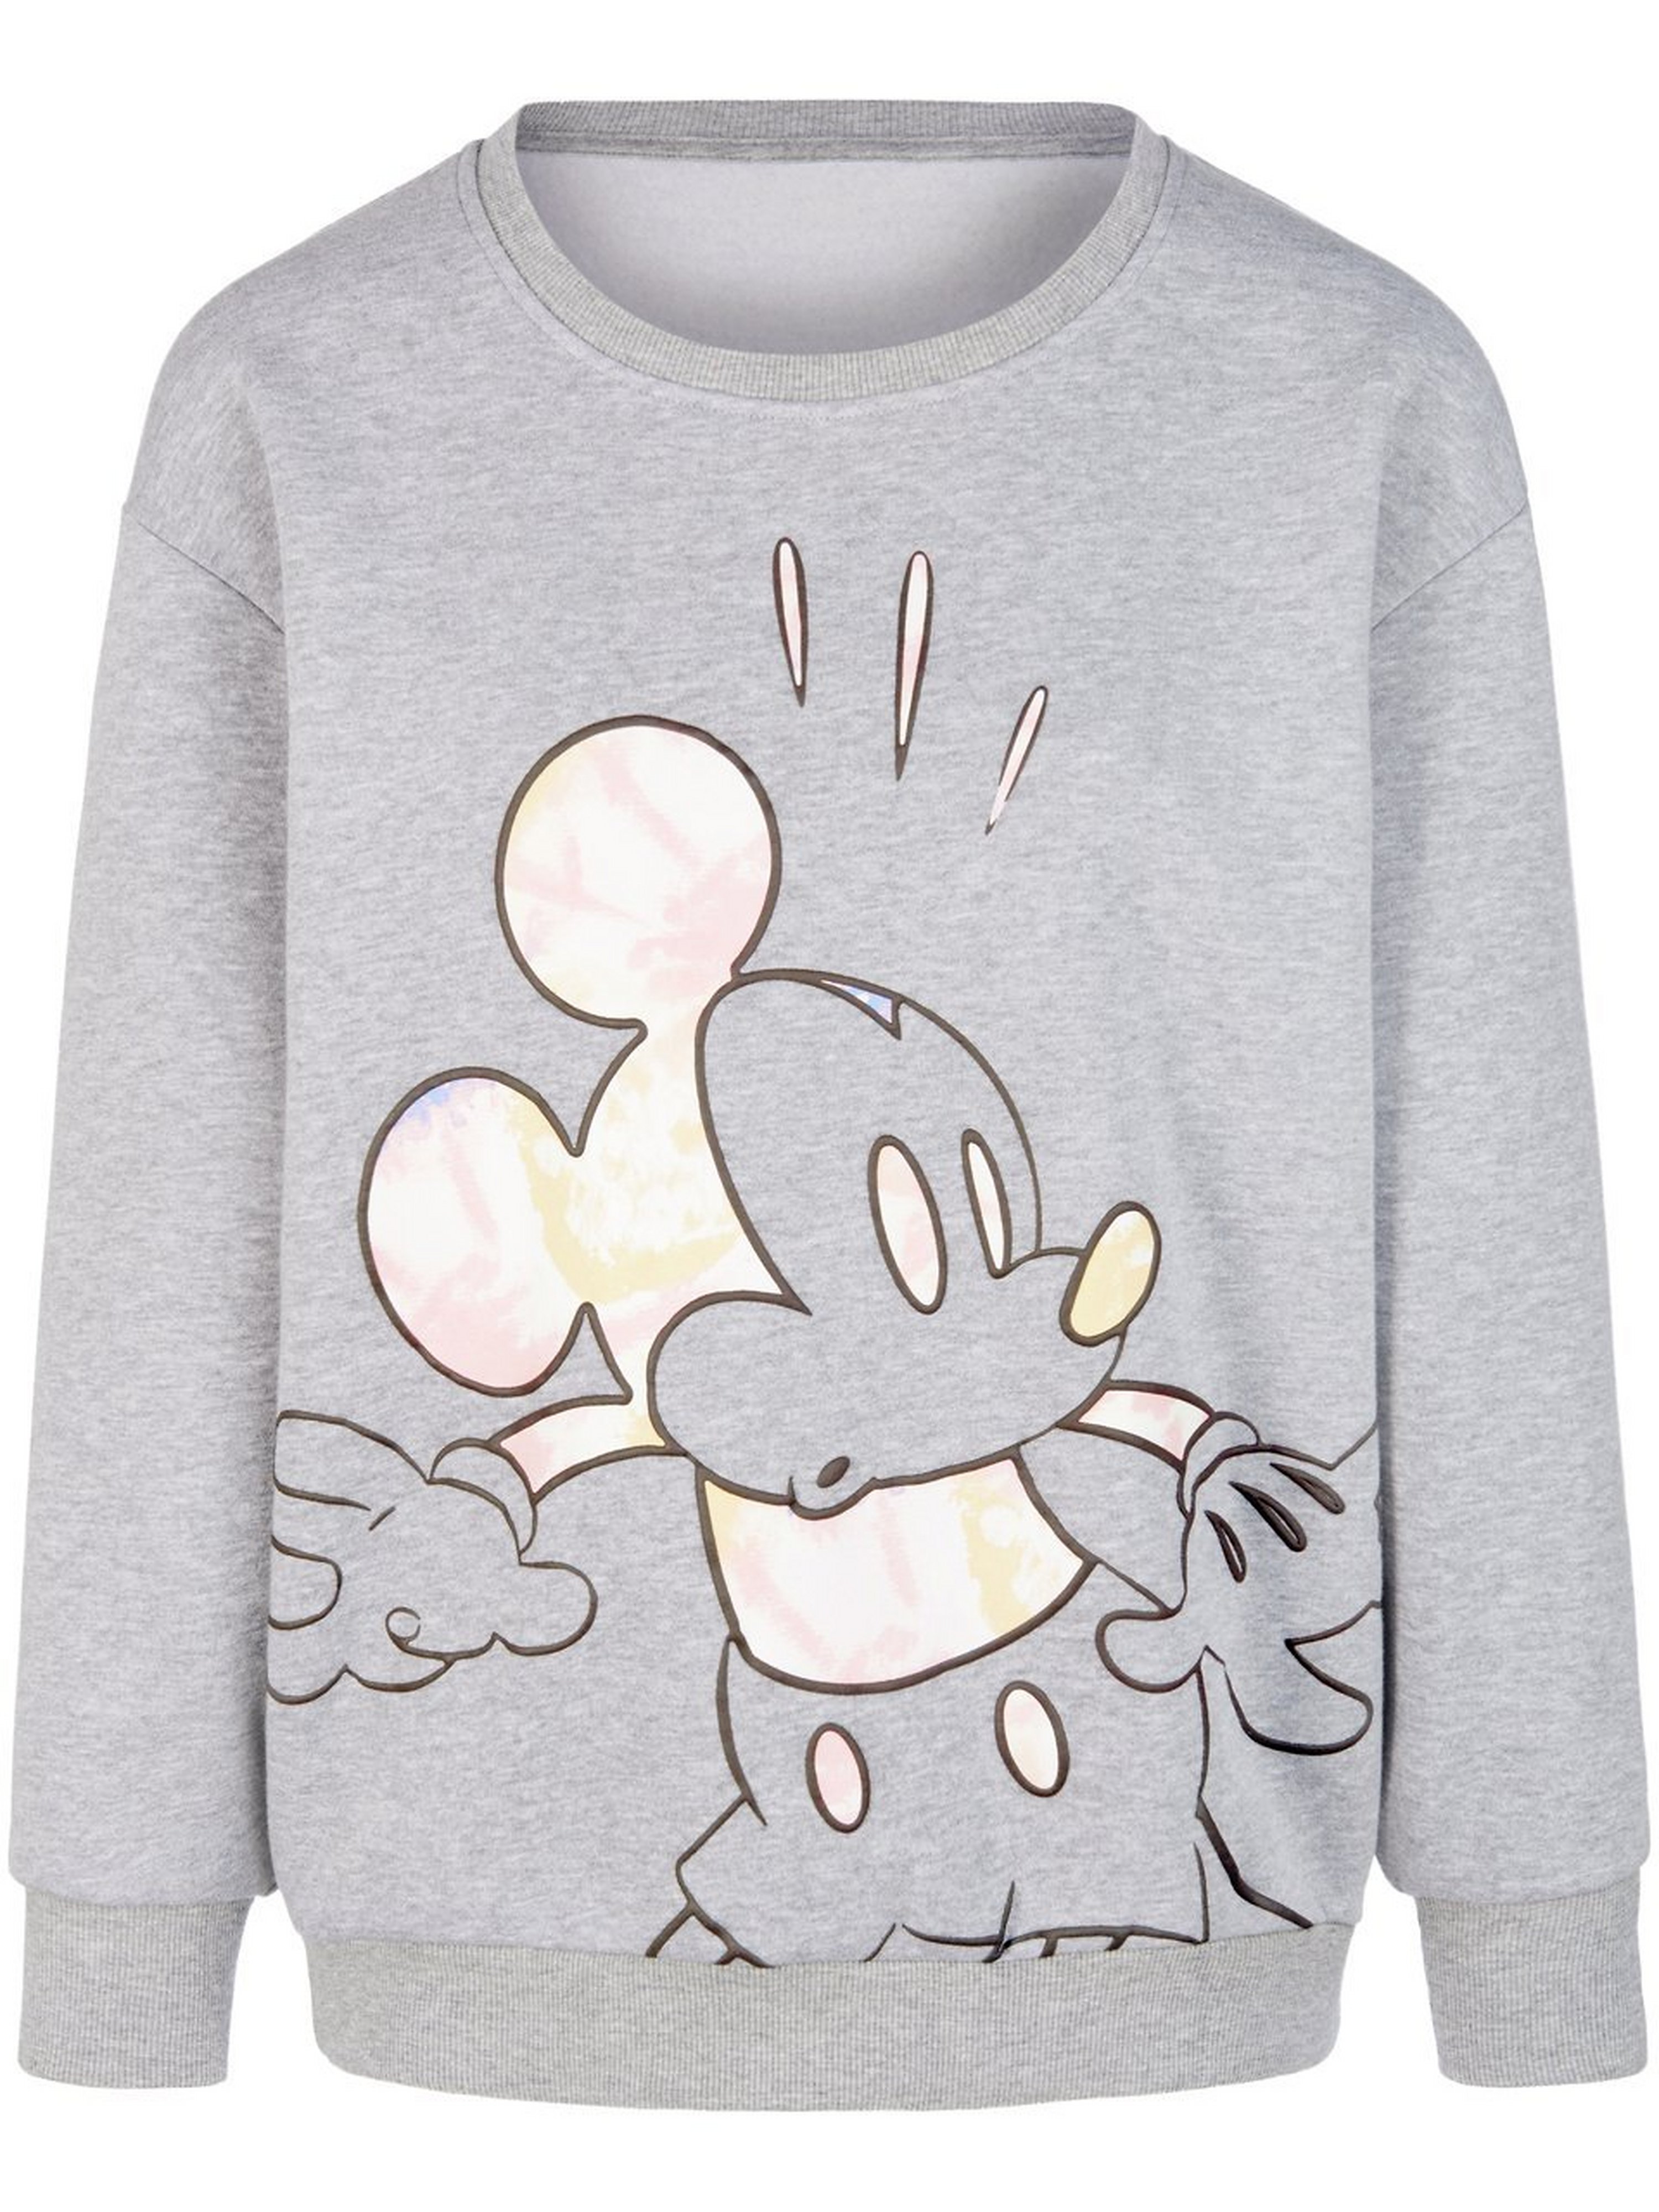 Sweatshirt Mickey Mouse-motief Van Disney grijs